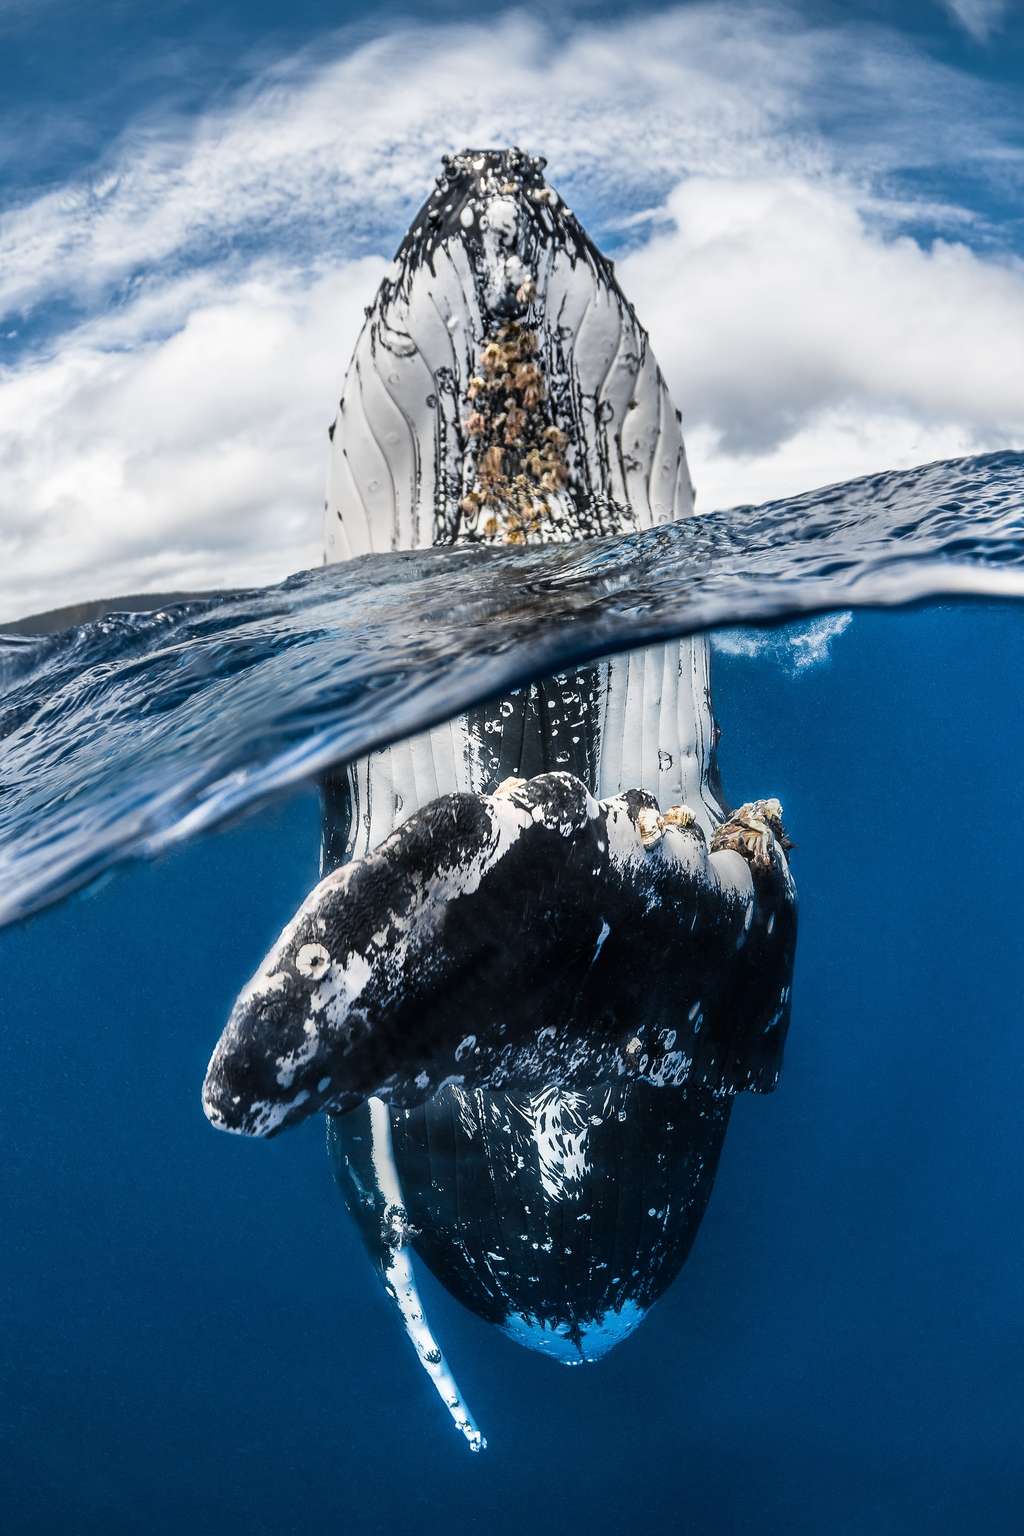 <em>« Bien que pesant plusieurs dizaines de tonnes, ce mammifère a montré une agilité et une puissance incroyable en se tenant verticalement dans l’eau »</em>, raconte Greg Lecoeur qui se rend régulièrement à Tonga pour rencontrer des baleines à bosse. © Greg Lecoeur, UPY 2018